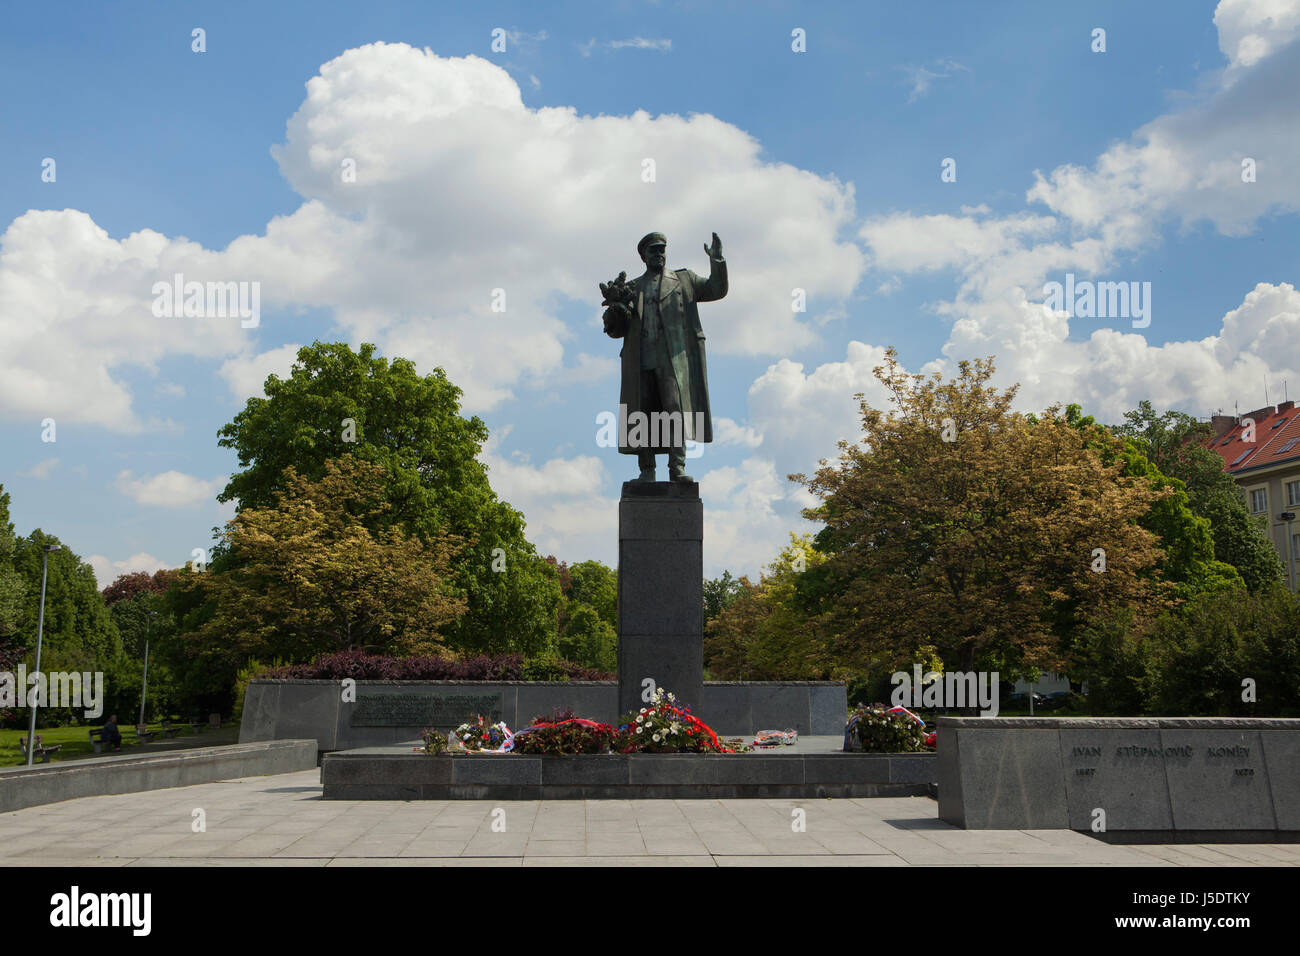 Denkmal für sowjetische Militärkommandant Ivan Konev tschechischen Bildhauers Zdeněk Krybus (1980) im Stadtteil Dejvice in Prag, Tschechien. Stockfoto